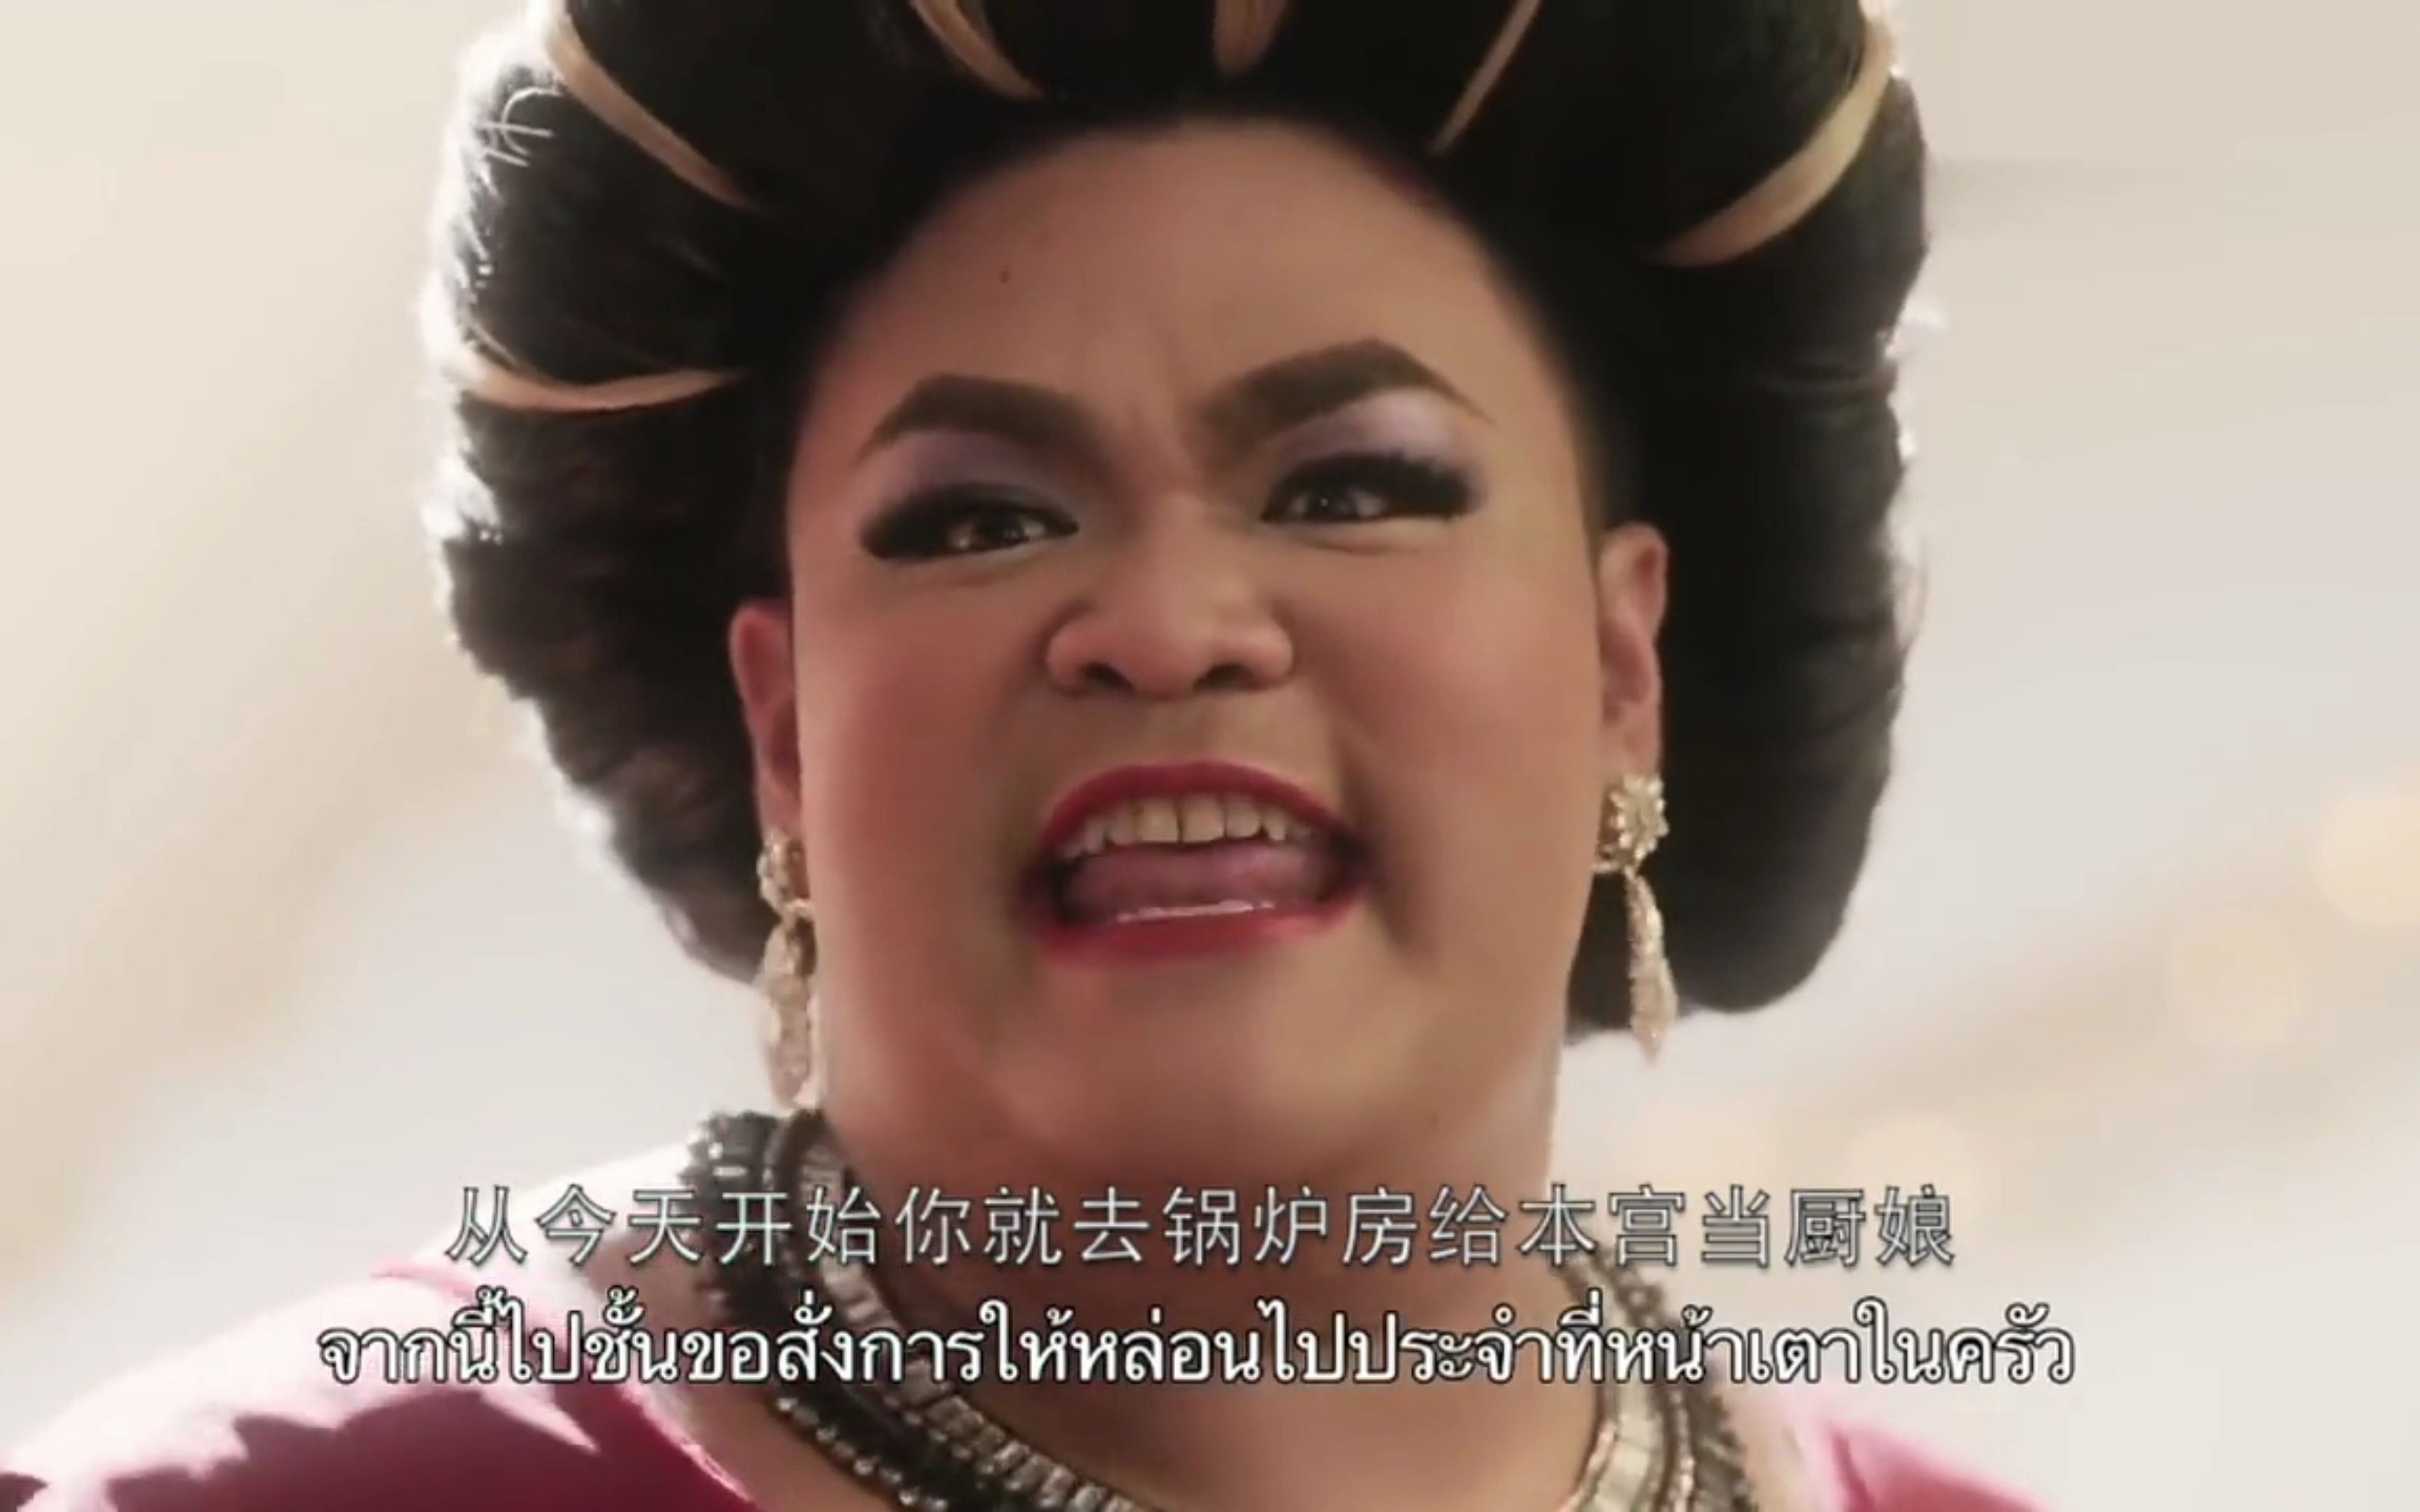 泰国广告这次终于对白雪公主下手了